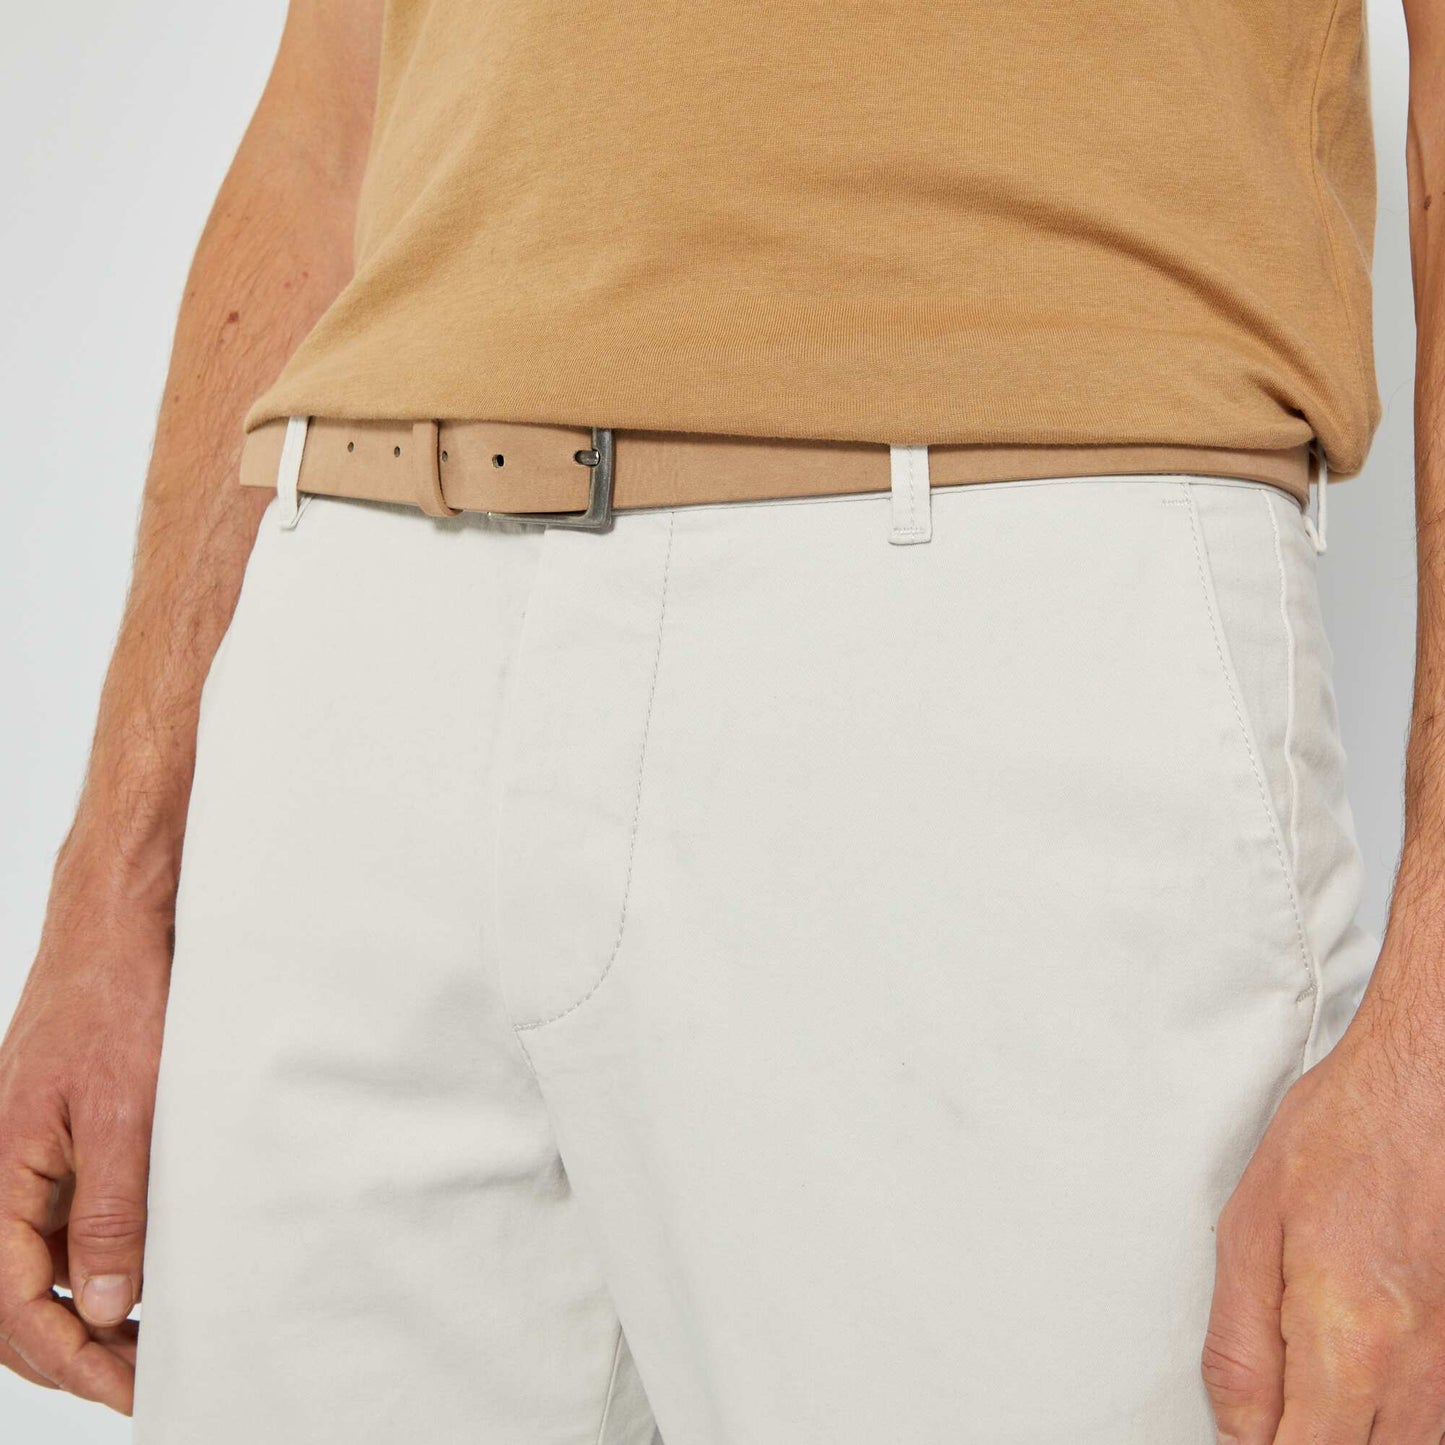 Slim-fit chinos with belt - L32 grey beige